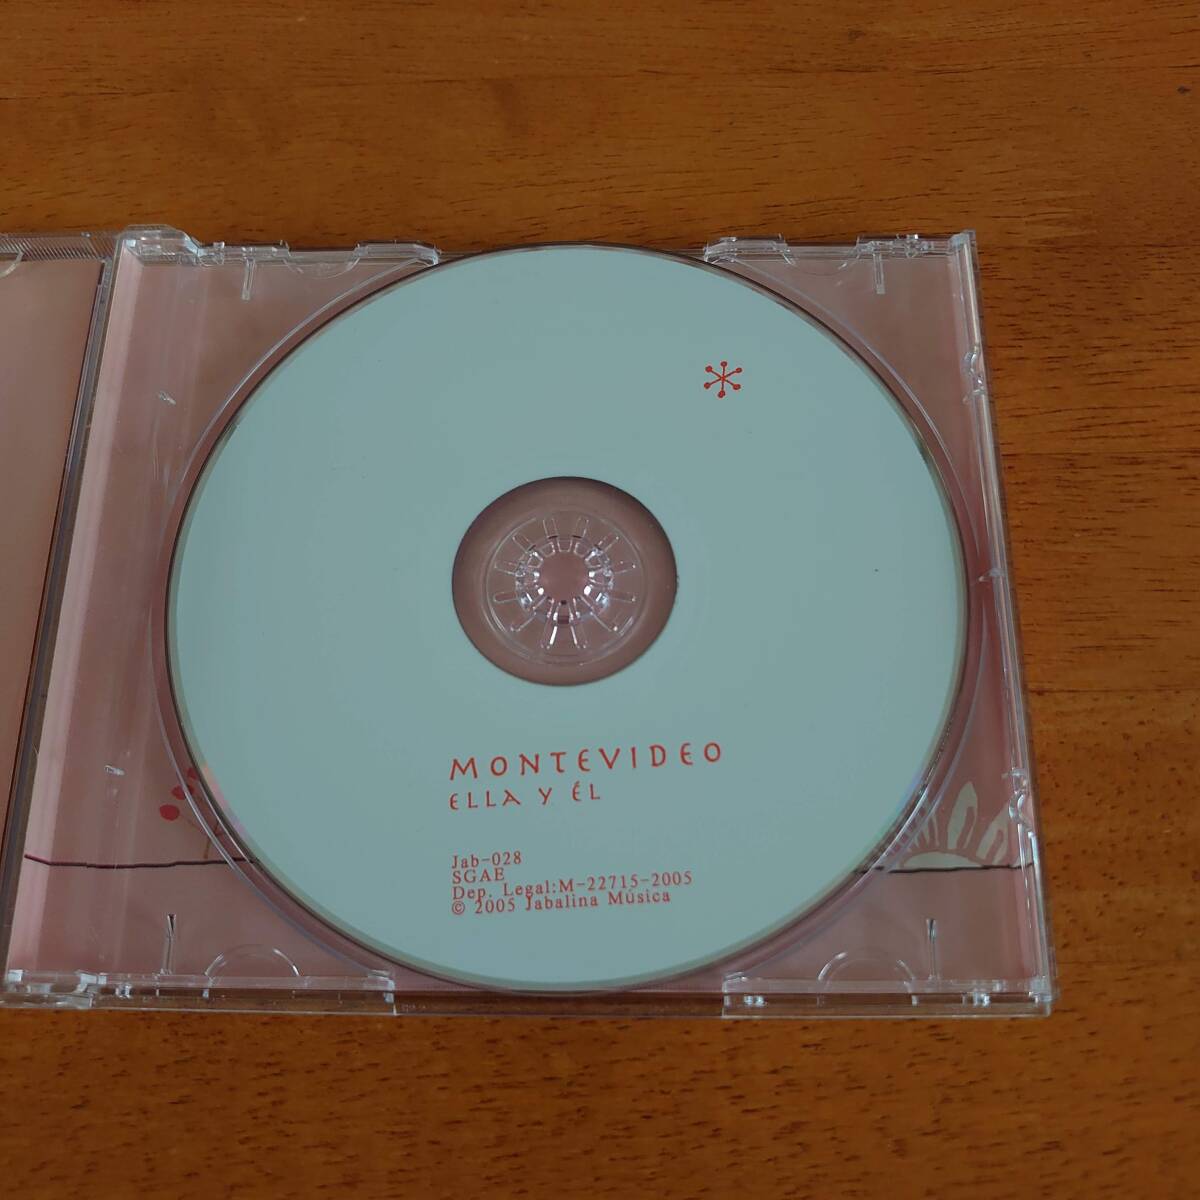 Montevideo / ELLA y EL 輸入盤 【CD】_画像3